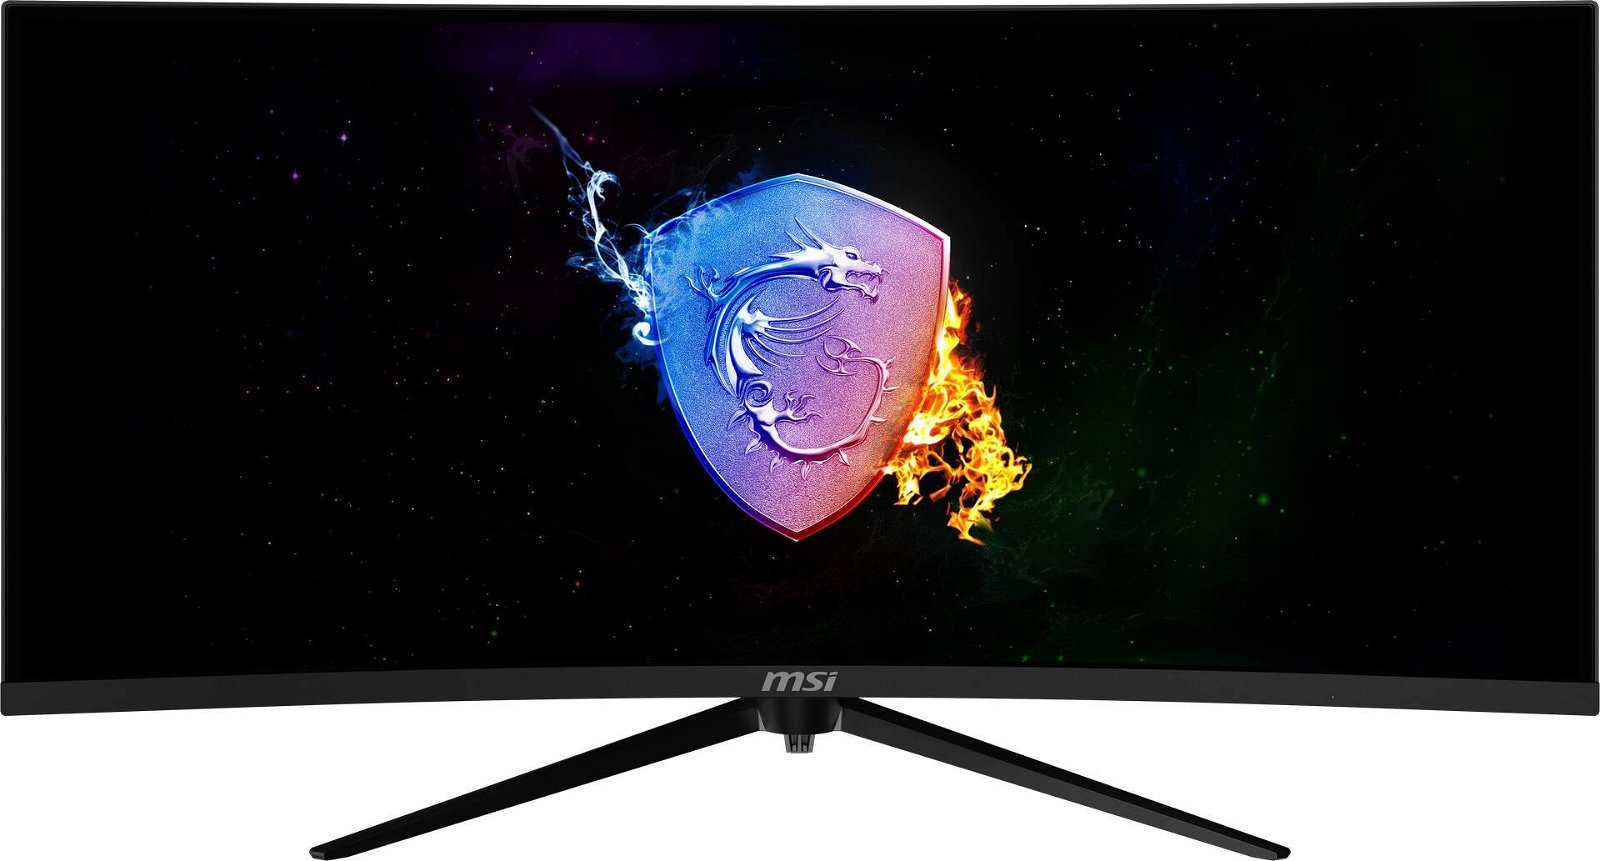 Immagine di MSI Optix MAG342, ecco la nuova linea di monitor ultrawide pensati per i videogiocatori